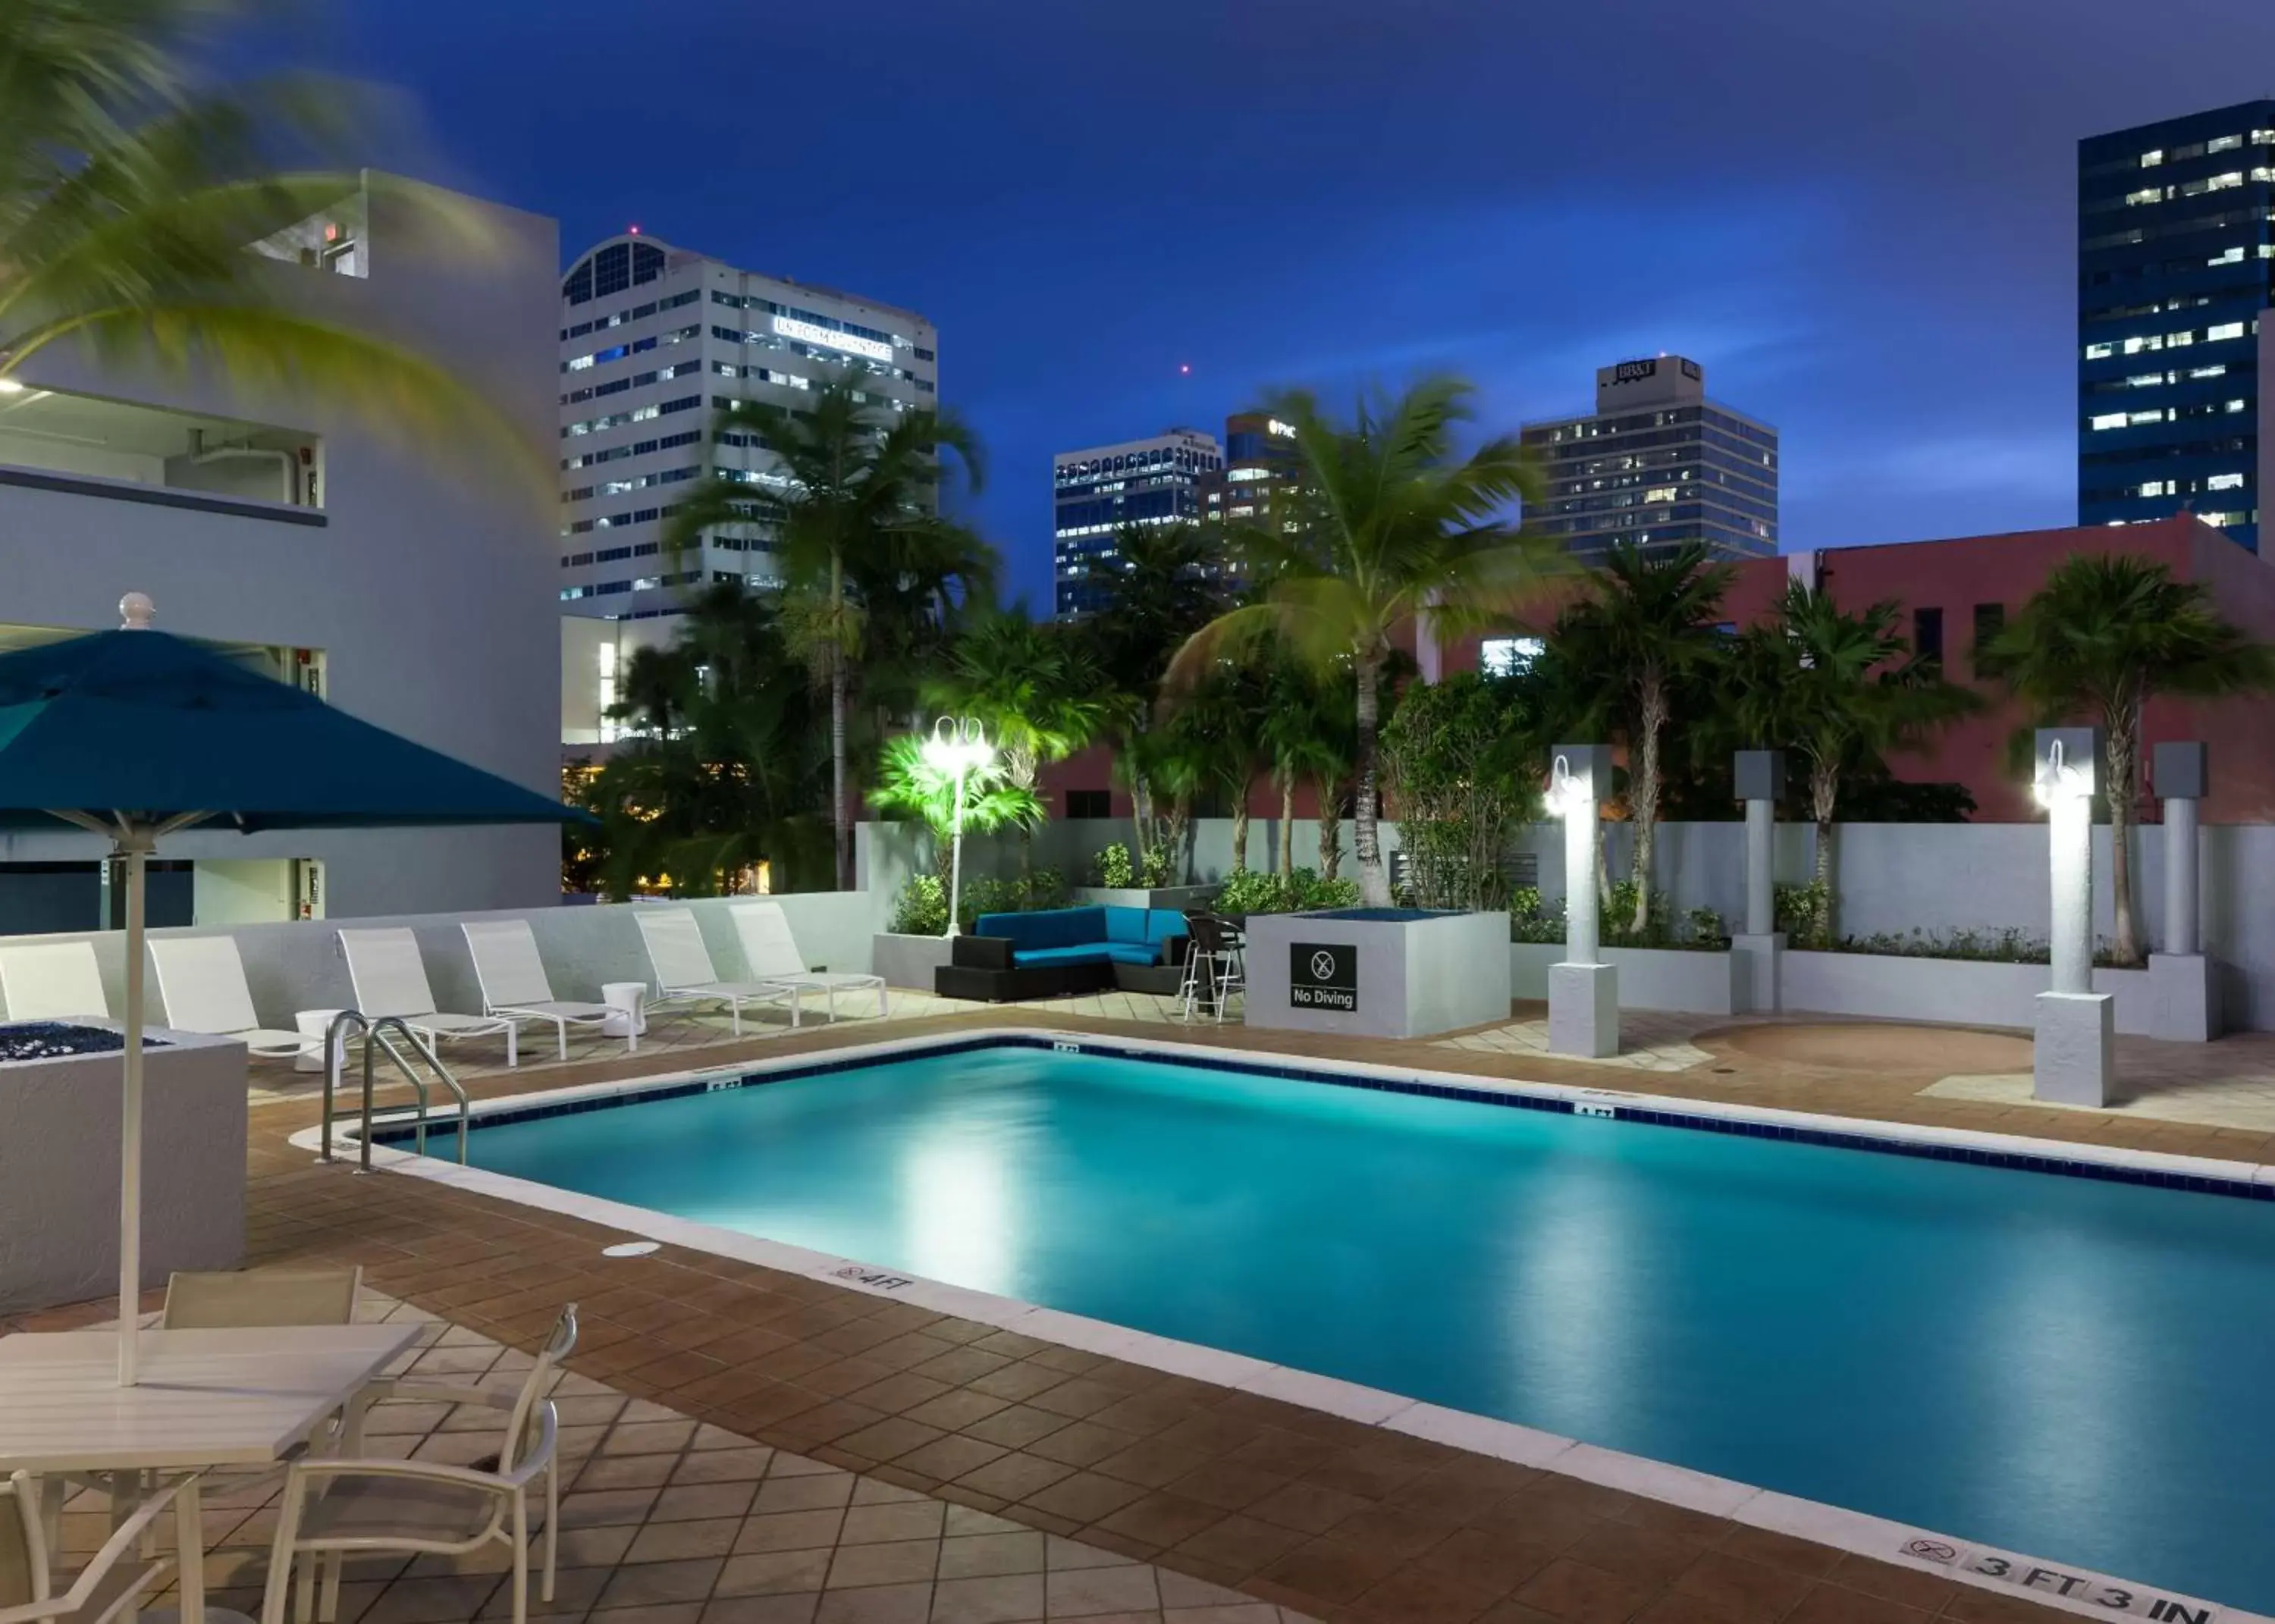 Swimming Pool in Hampton Inn Fort Lauderdale Downtown Las Olas Area